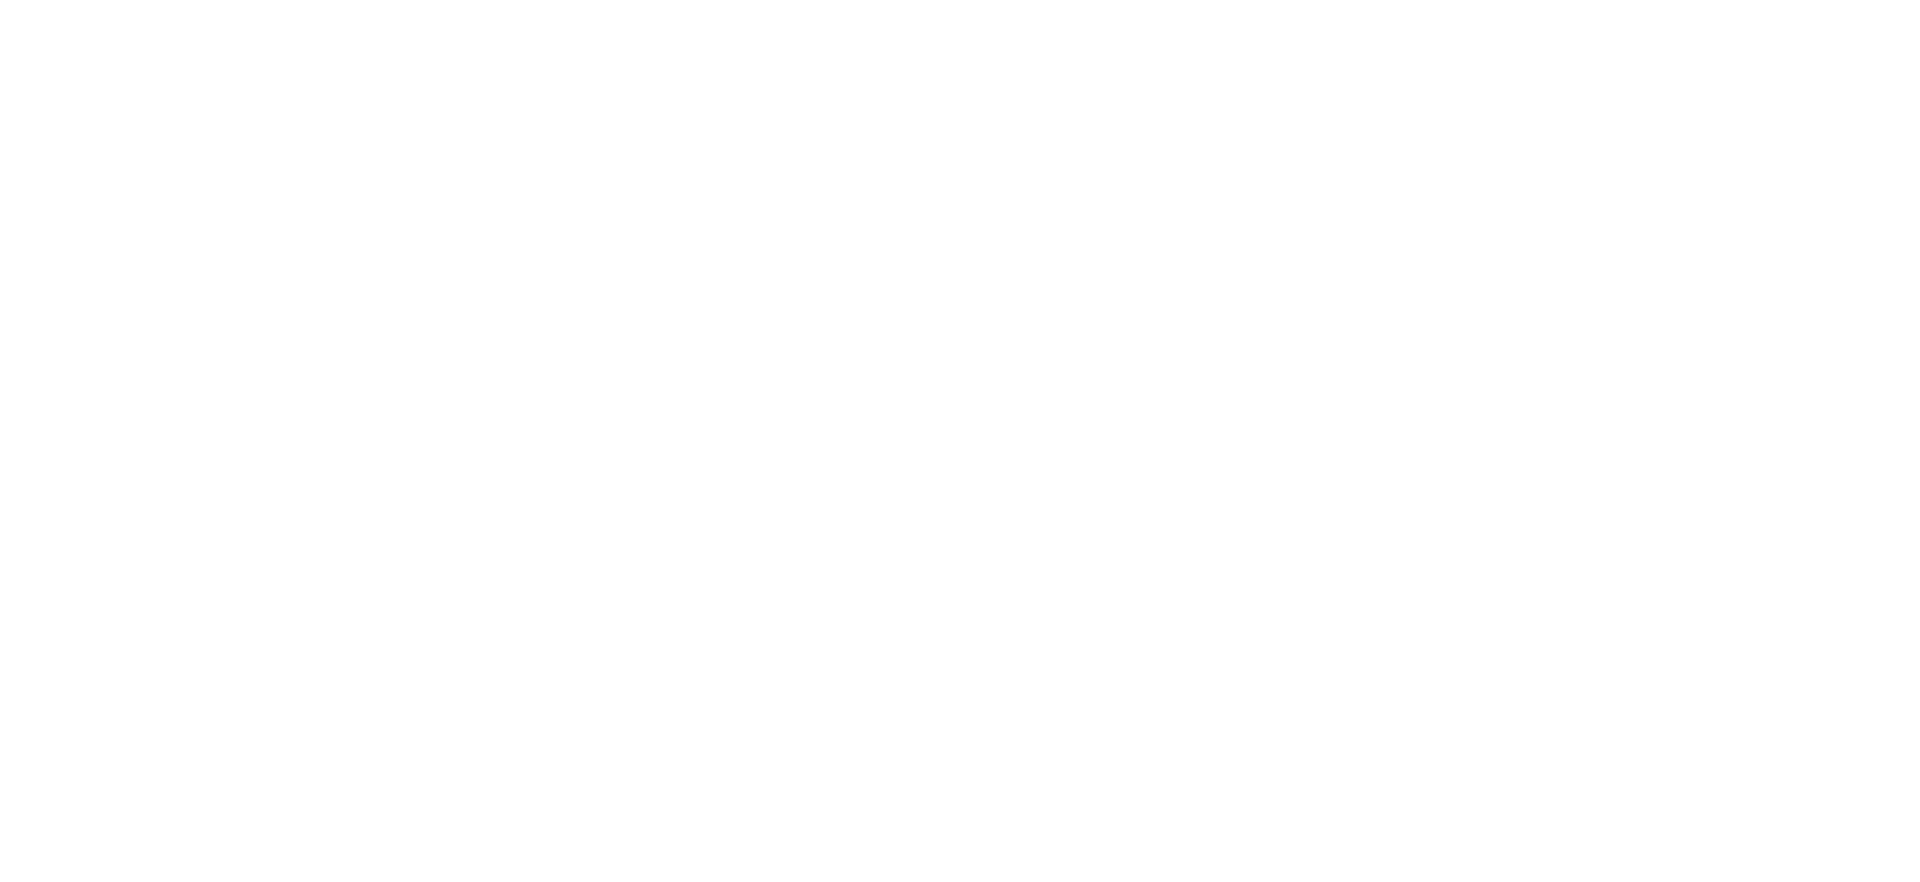 Keller Williams logo